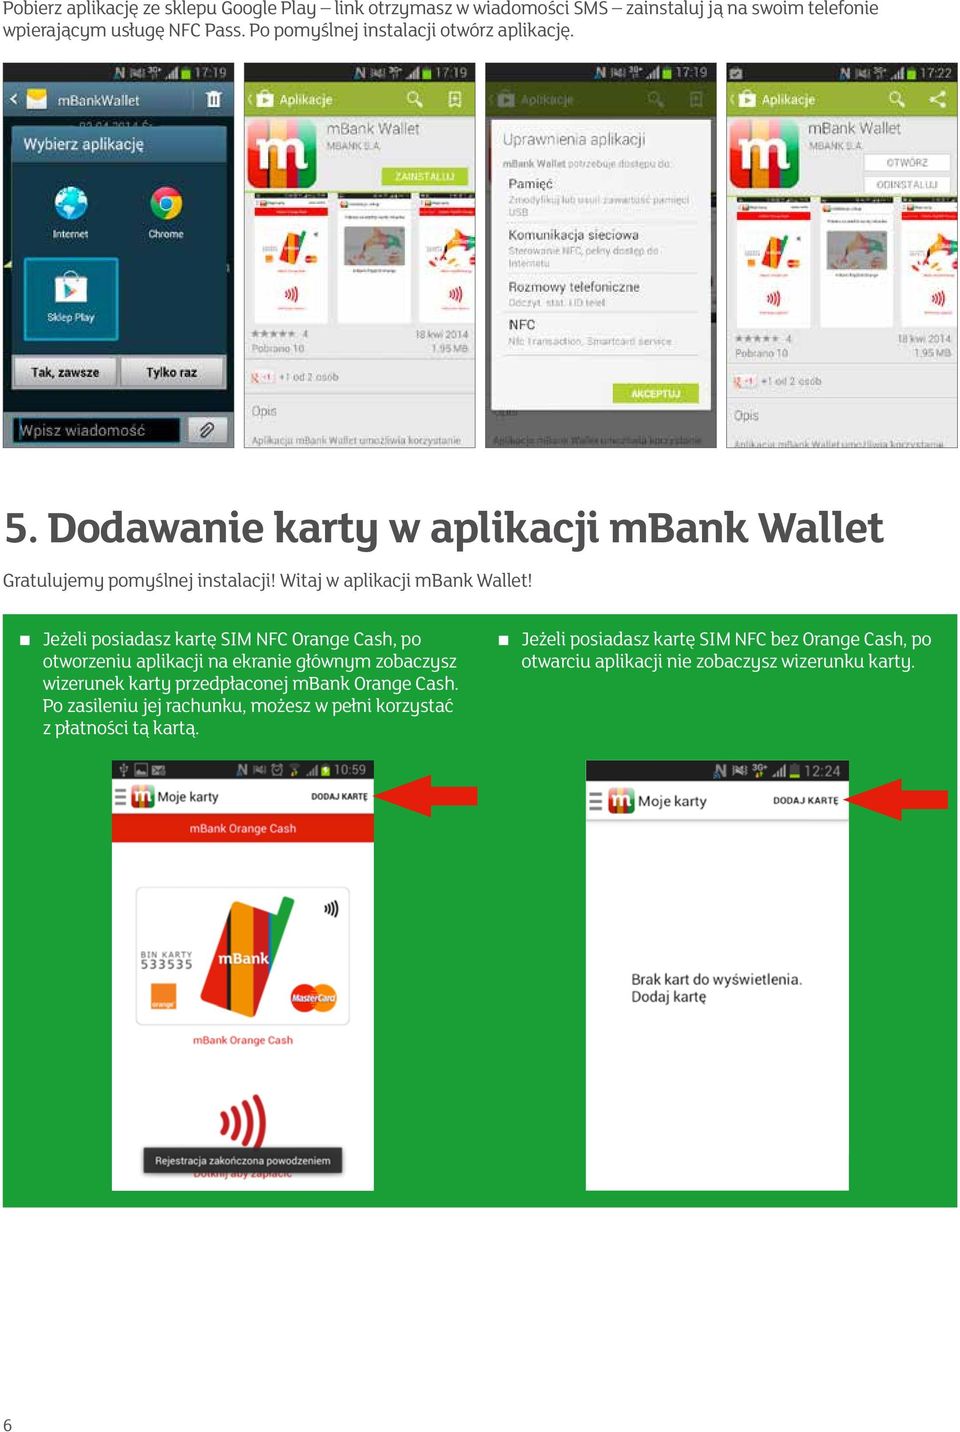 Jeżeli posiadasz kartę SIM NFC Orange Cash, po otworzeniu aplikacji na ekranie głównym zobaczysz wizerunek karty przedpłaconej mbank Orange Cash.